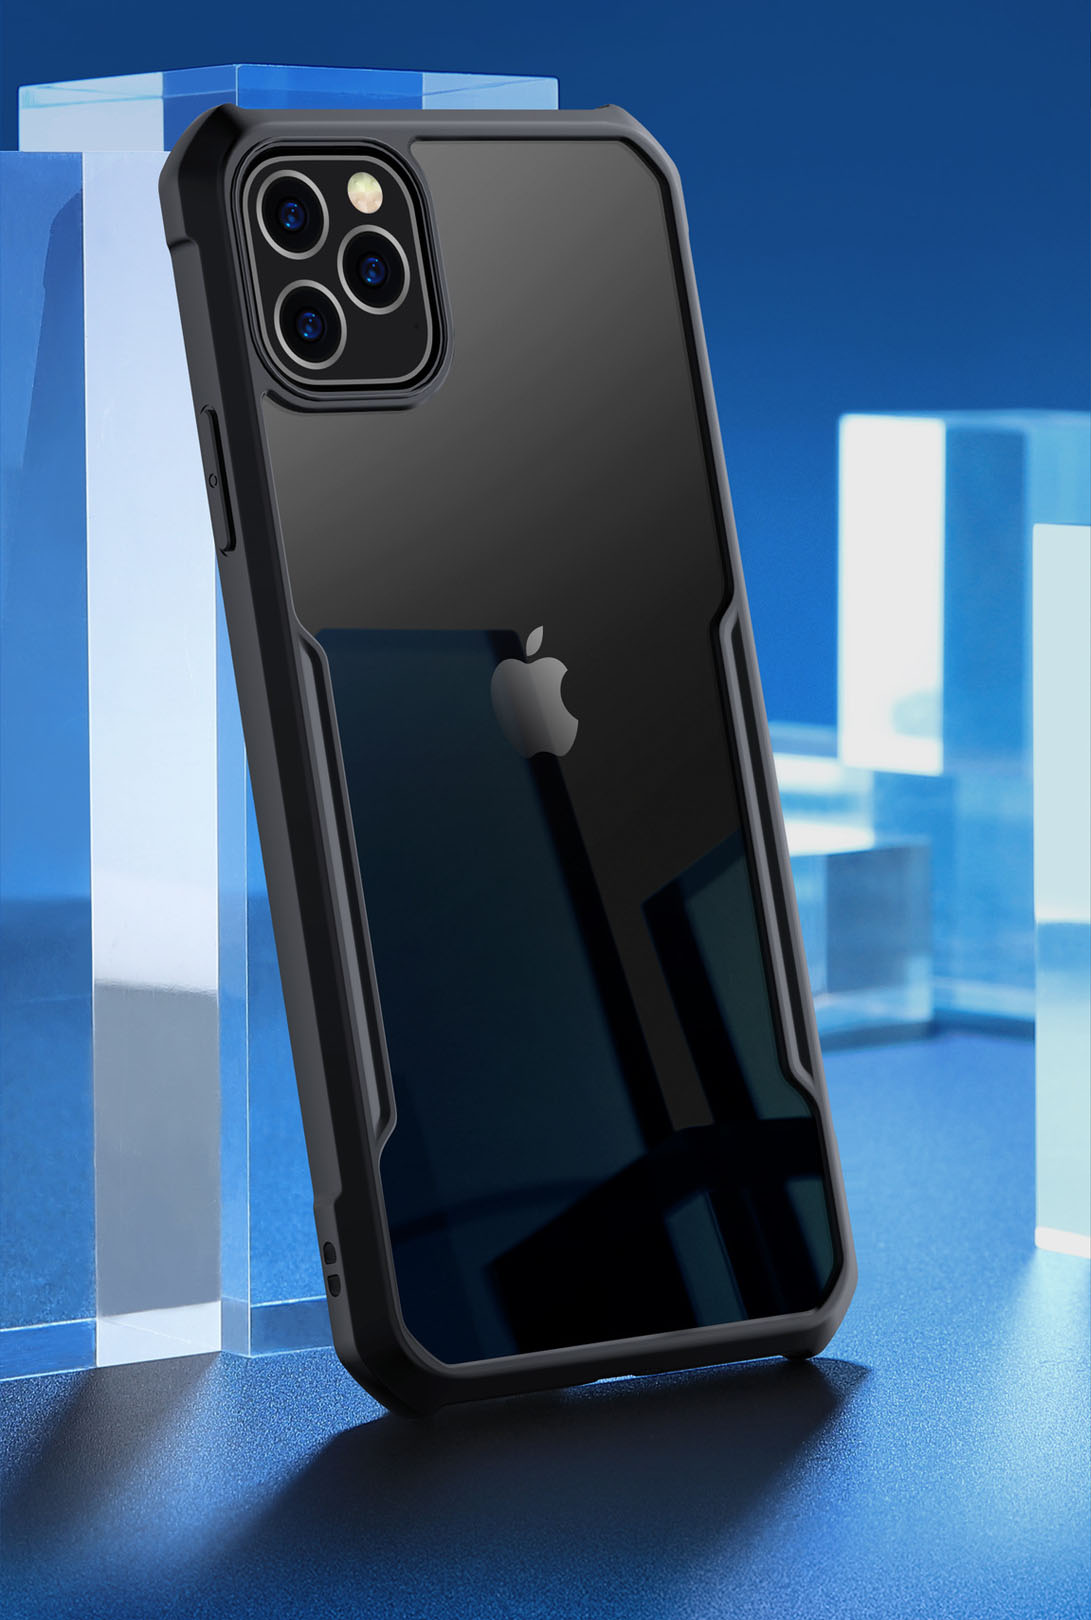 Hình ảnh ốp lưng cho iphone 11 pro và iphone 11 max pro chống sốc - chính hãng Xundd